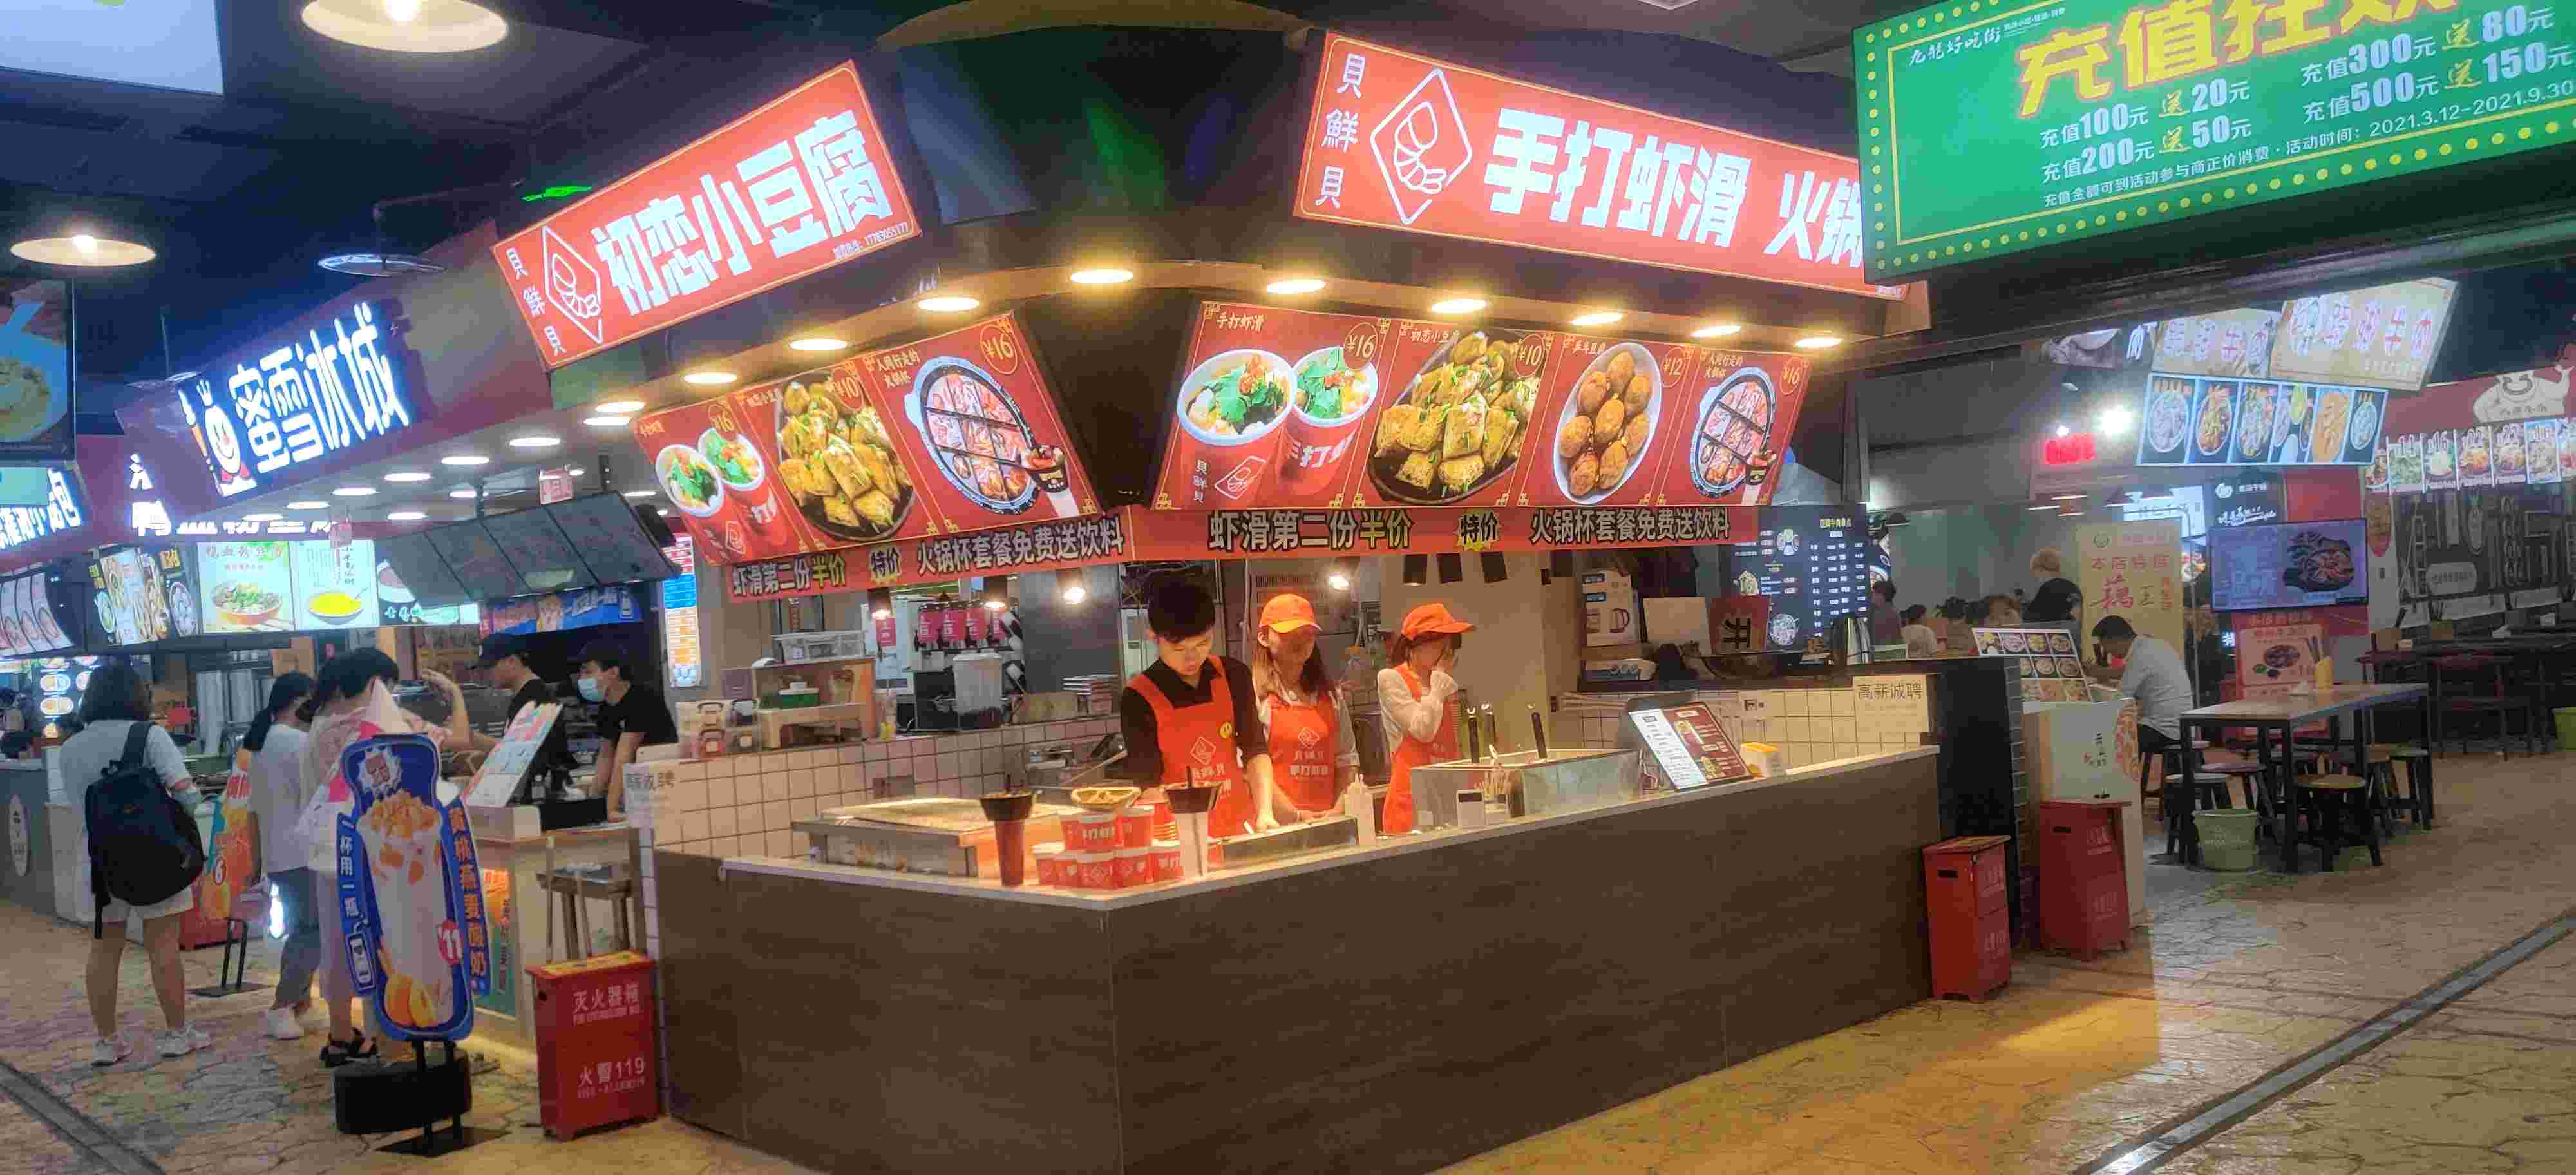 九龙坡区明佟餐饮店 环境照片活动图片